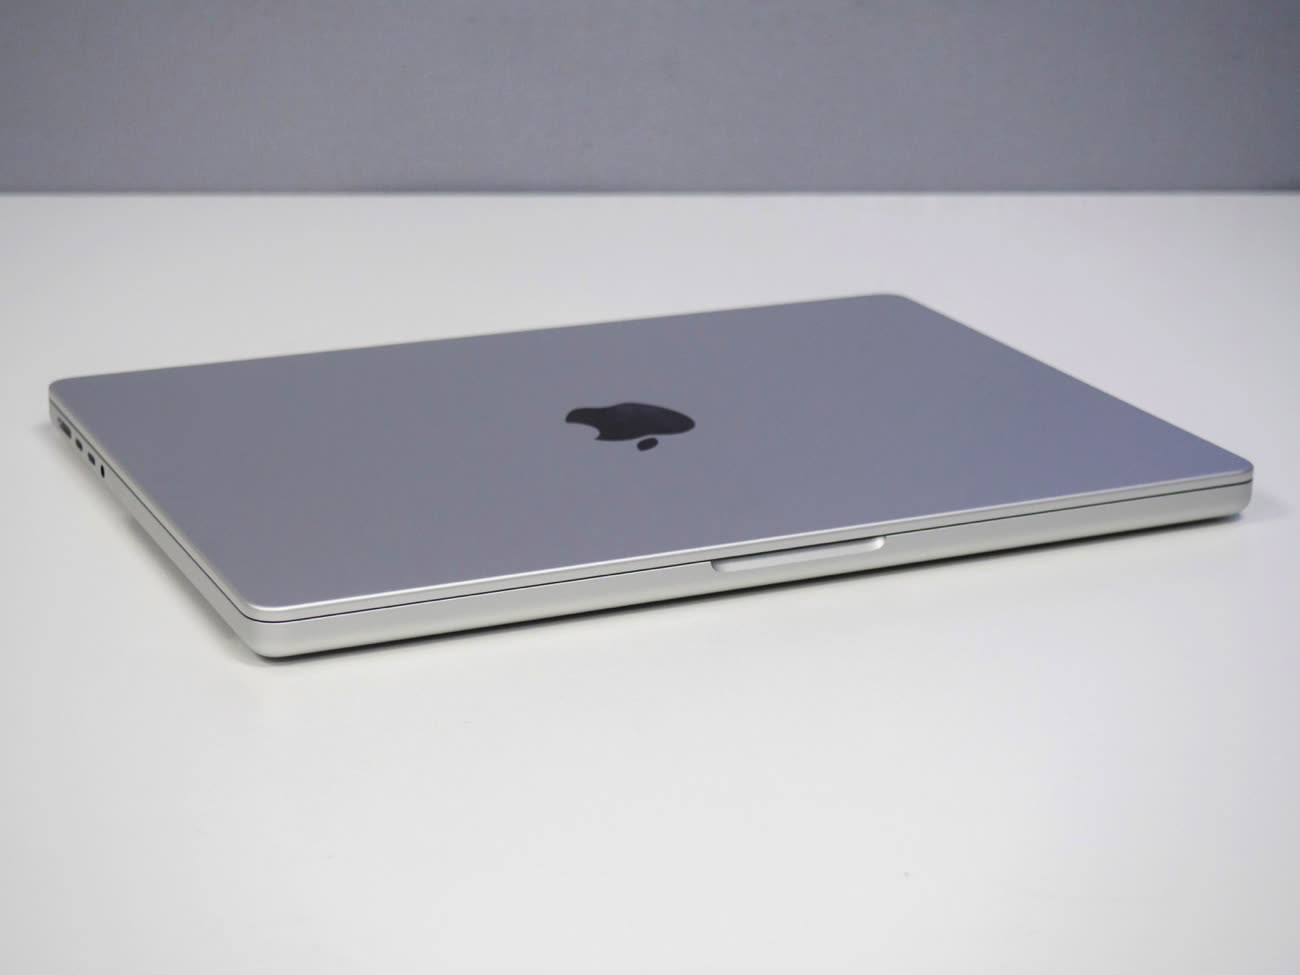 MacBook Pro [year] (14 et 16 pouces) : fiche technique, prix et avis